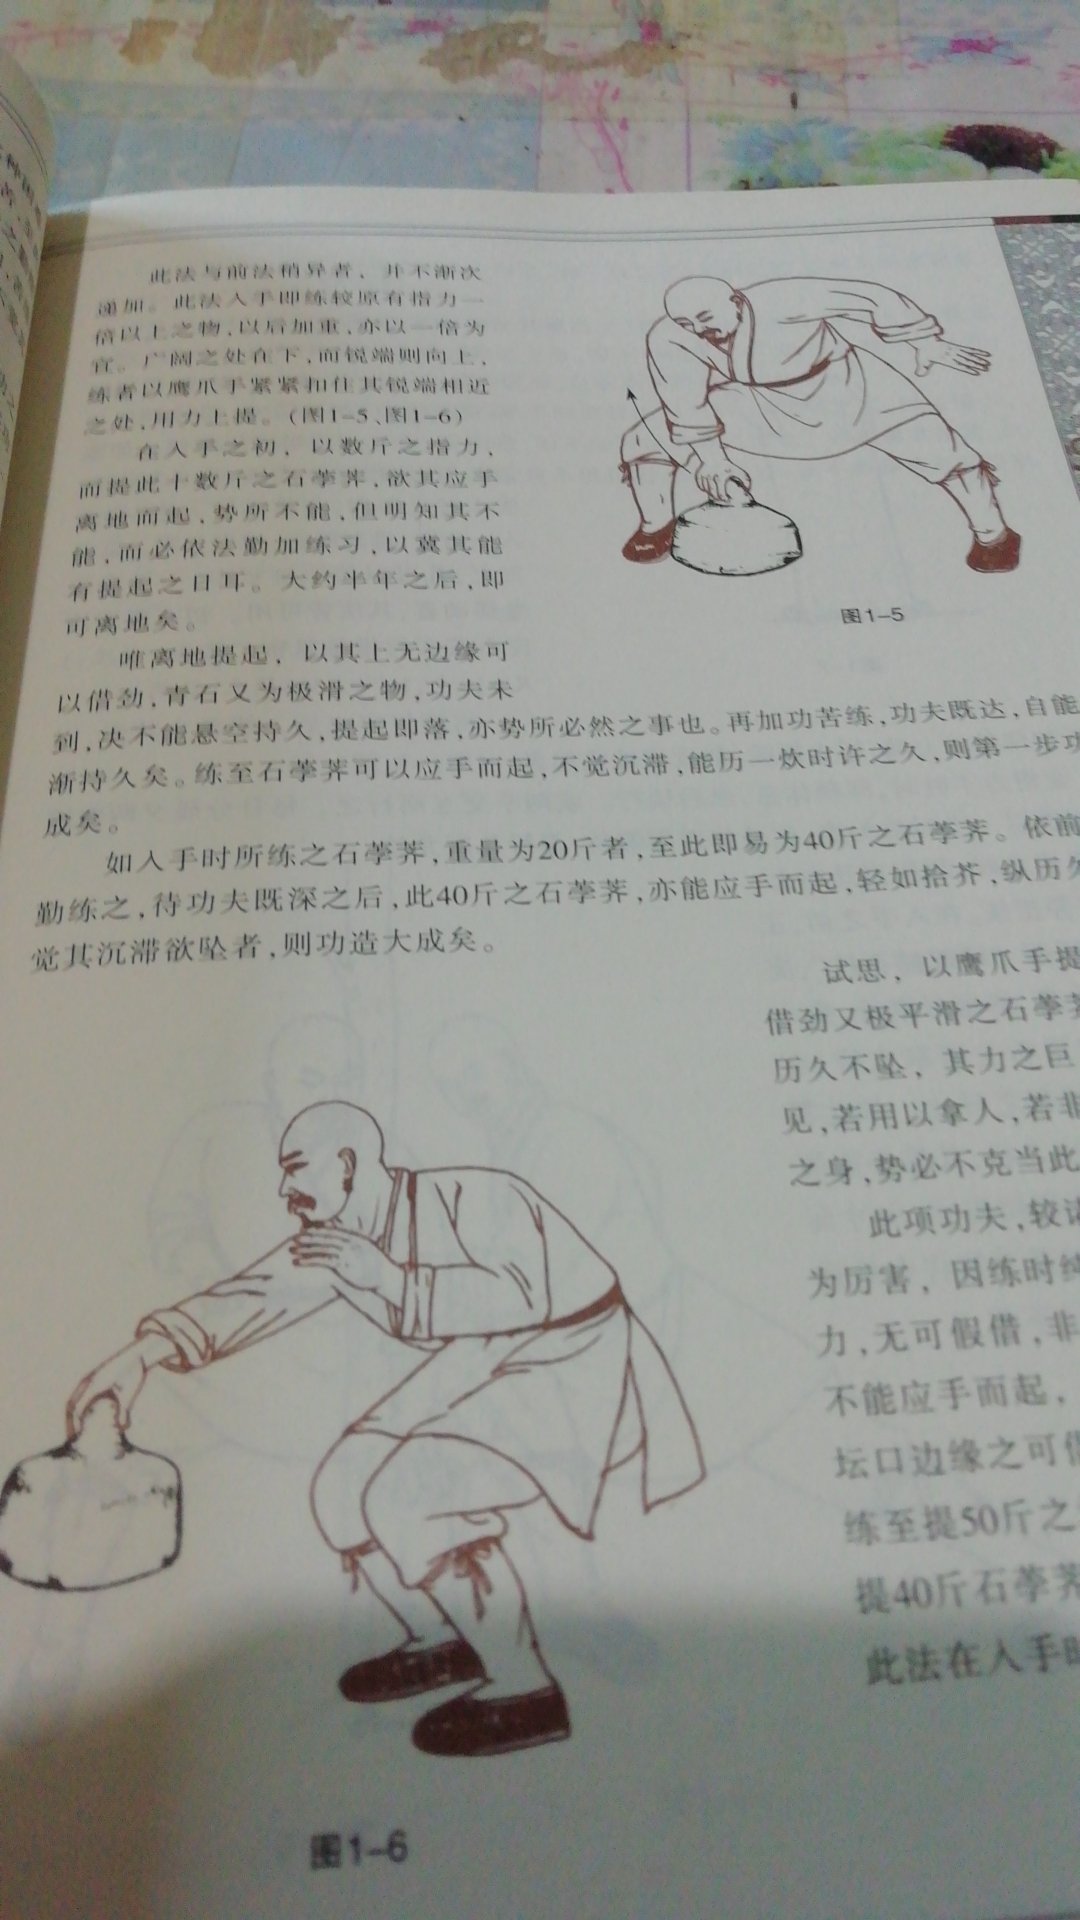 少林鹰爪铁布衫一书讲述了鹰爪功的练习方法、注意事项及浑元铁布衫的练功方法、注意事项，依法坚持习练必有所获。